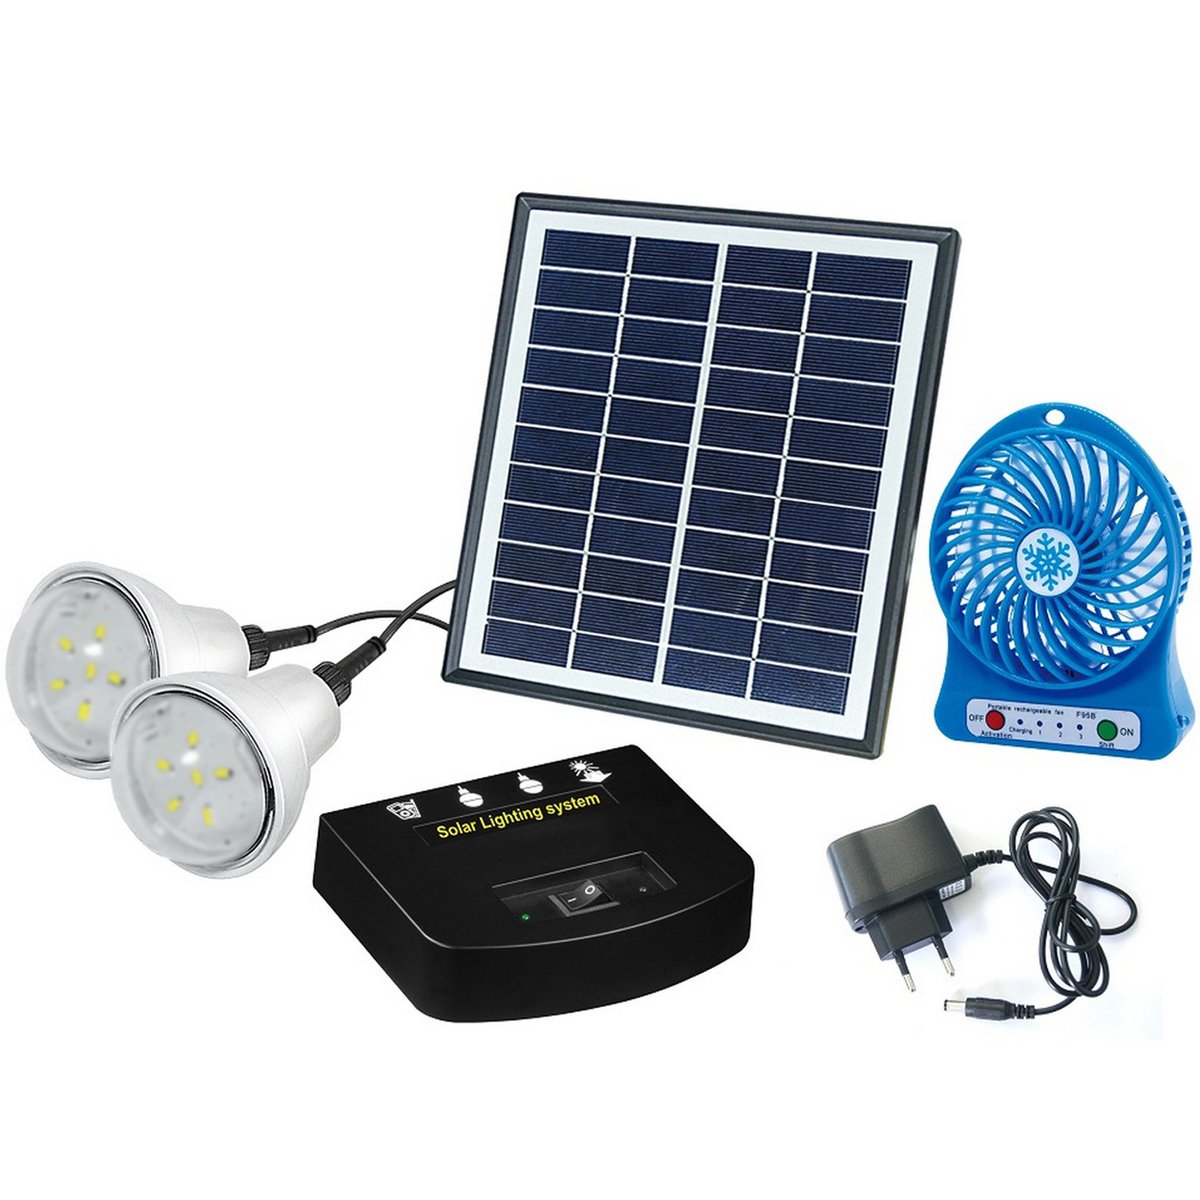 اشتري قم بشراء Powerman Solar Panel Home Lighting System PSK013N Online at Best Price من الموقع - من لولو هايبر ماركت Tools & Hardware في الامارات